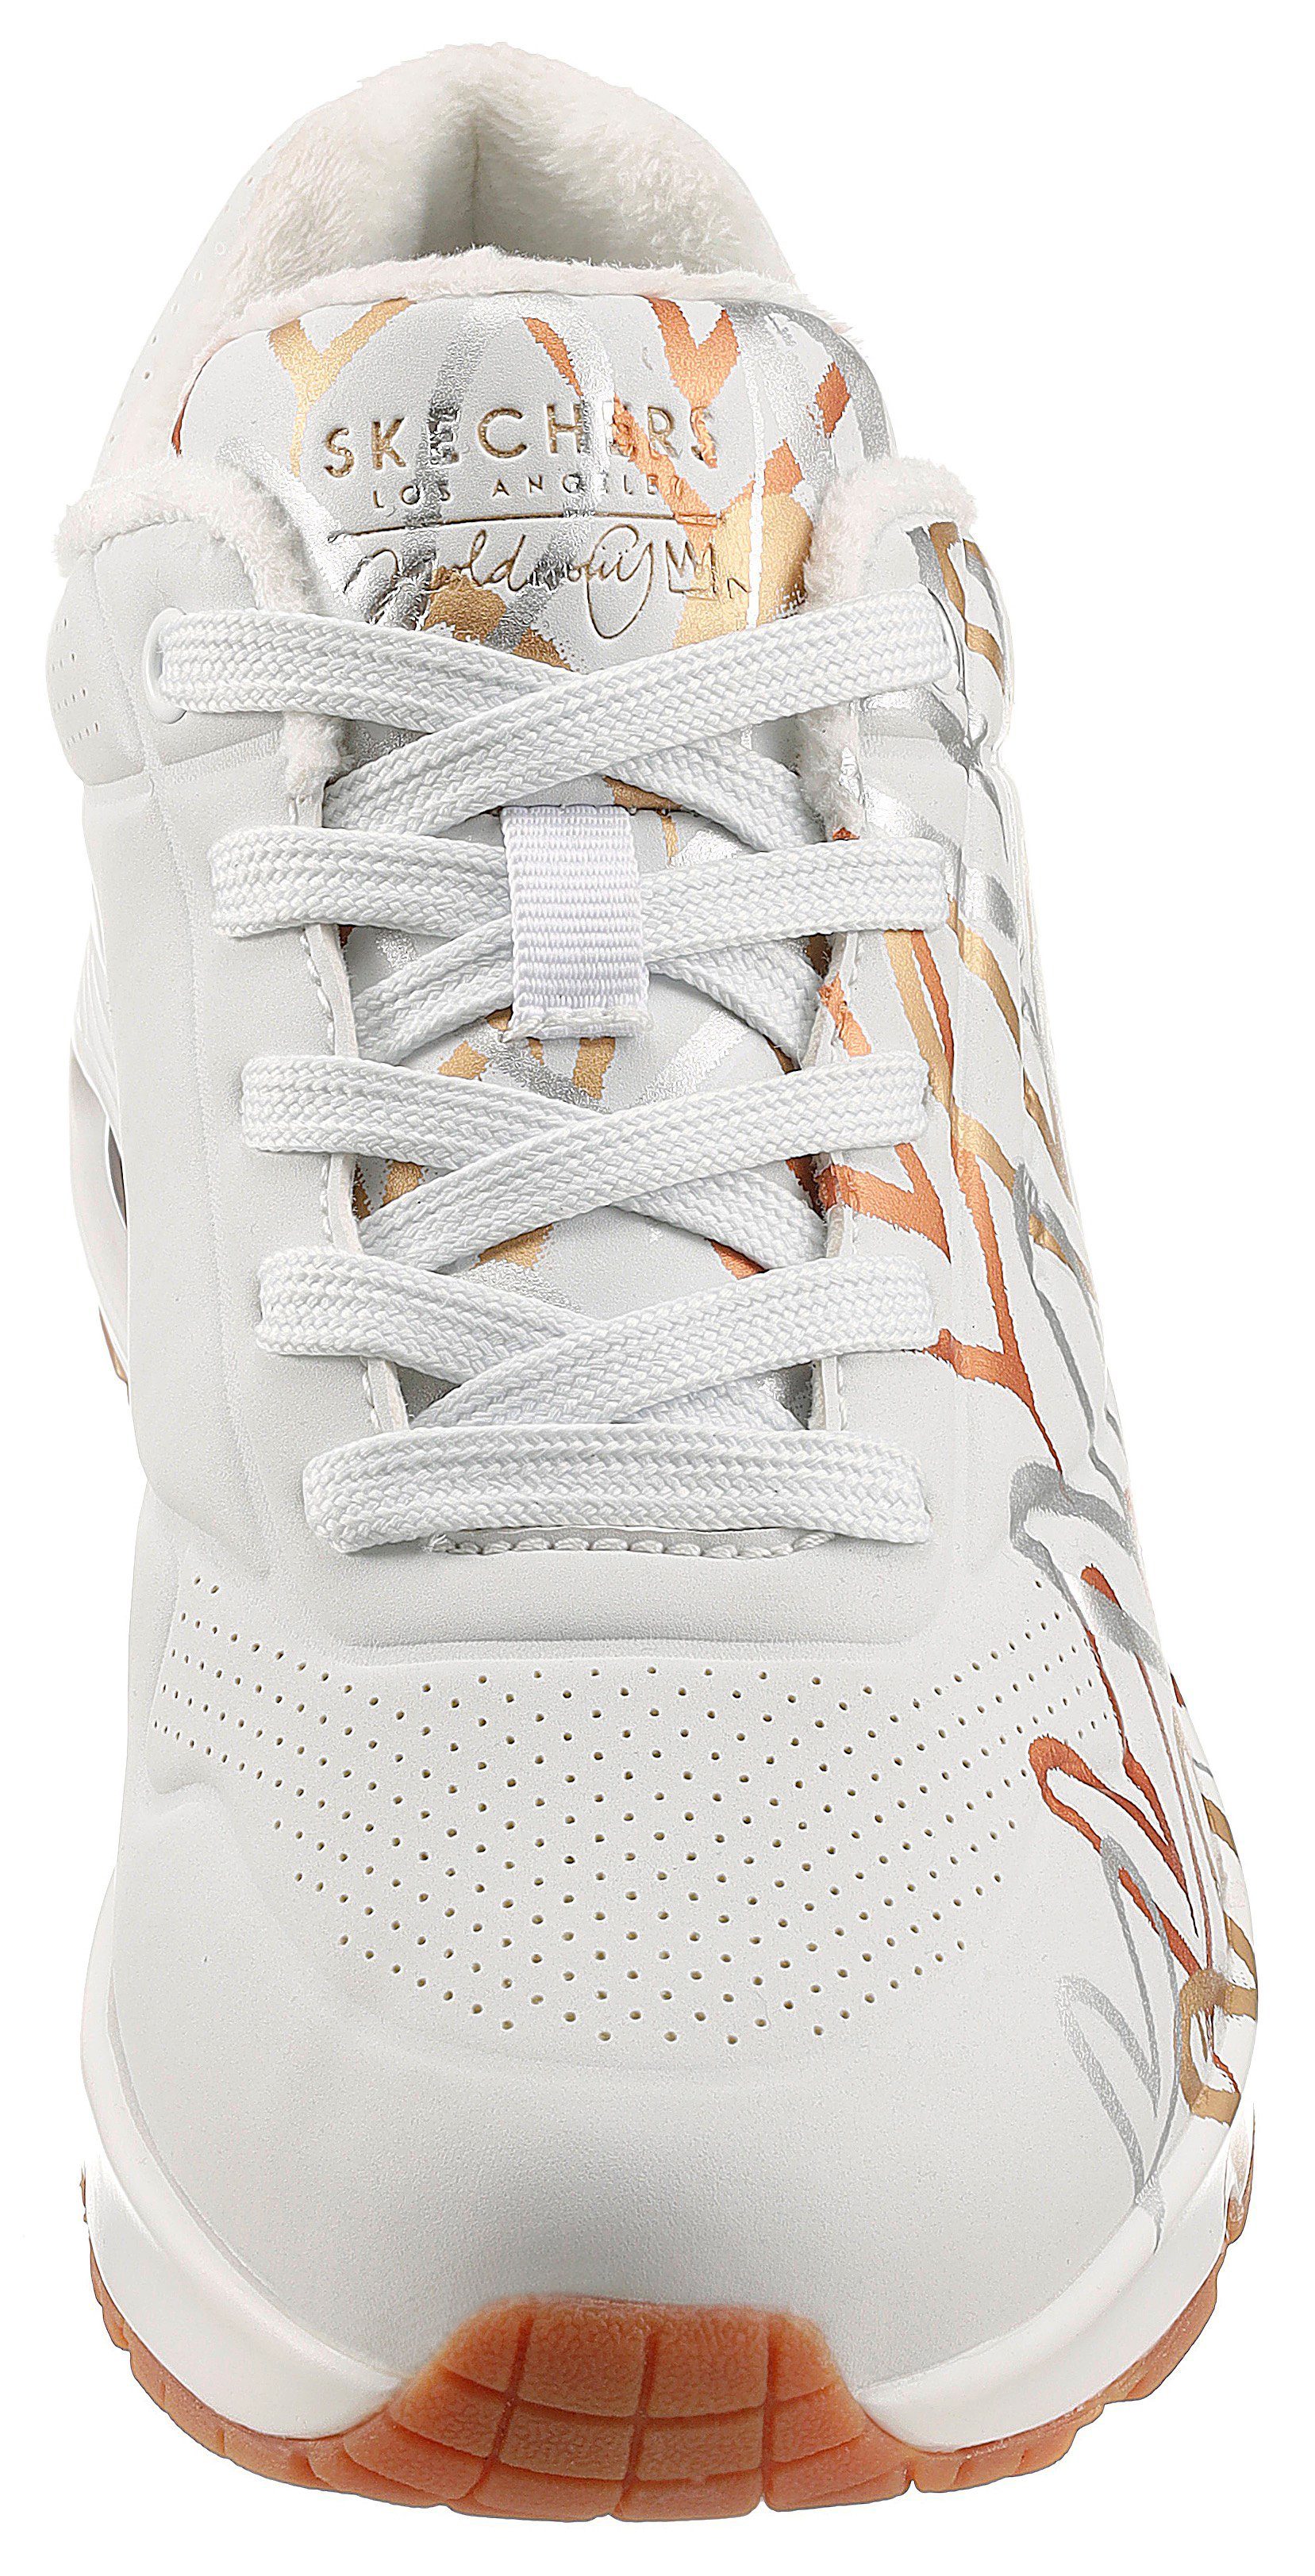 - trendigen Metallic-Print METALLIC weiß-goldfarben UNO mit Skechers LOVE Sneaker